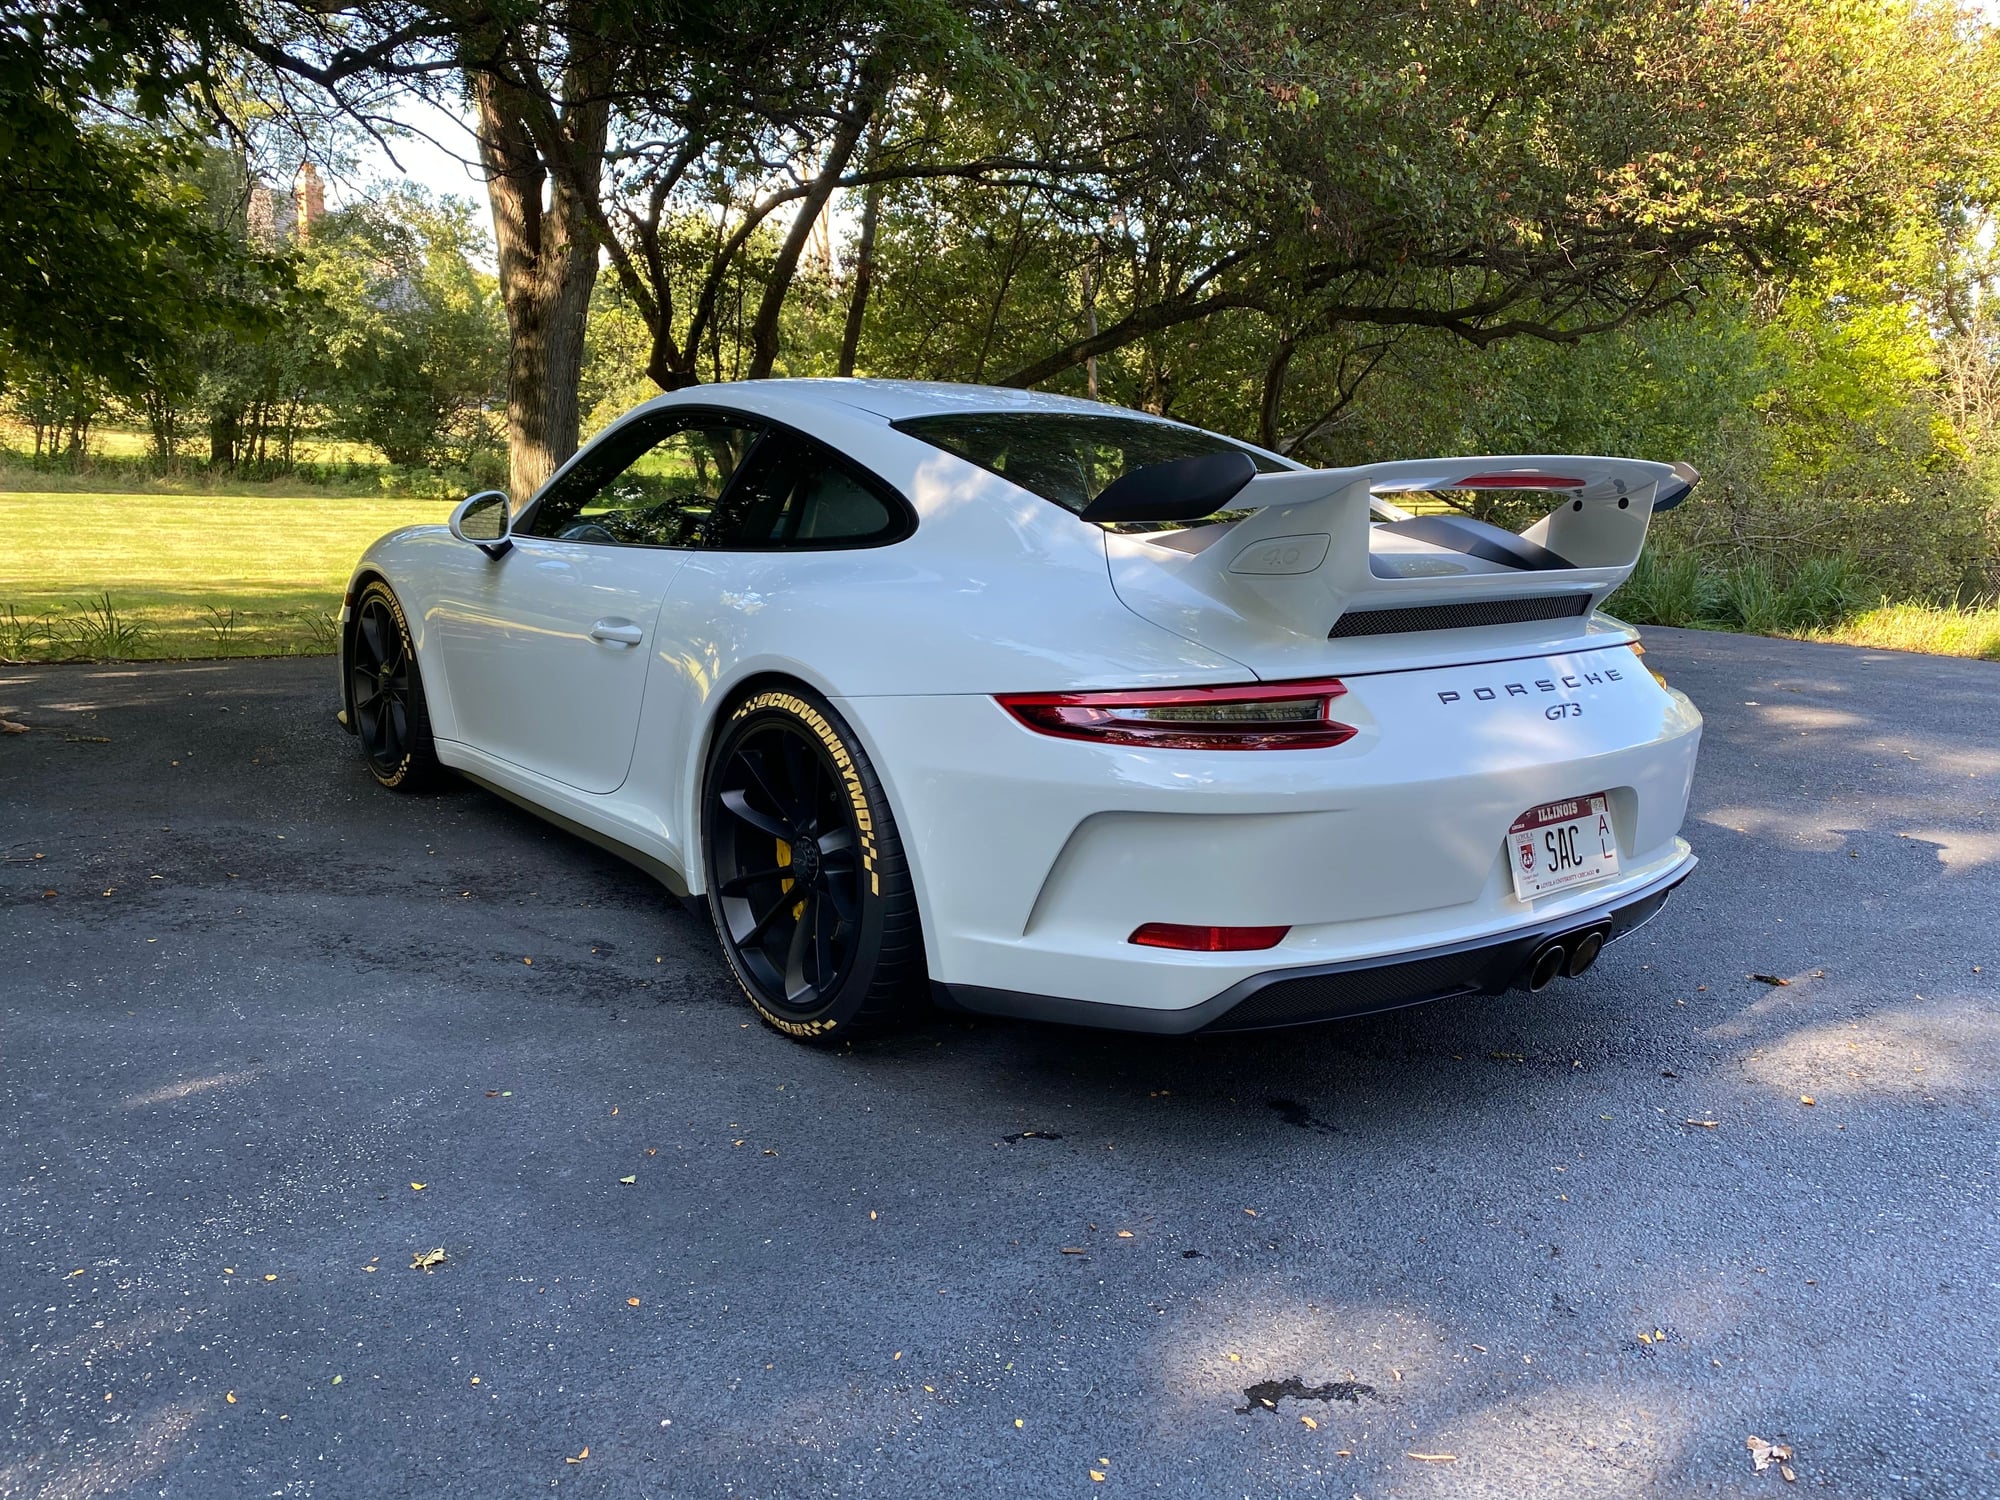 2018 Porsche 911 - 2018 Porsche GT3 6MT - New - VIN WP0AC2A98JS176577 - 12,000 Miles - 6 cyl - 2WD - Manual - Coupe - White - Barrington, IL 60010, United States